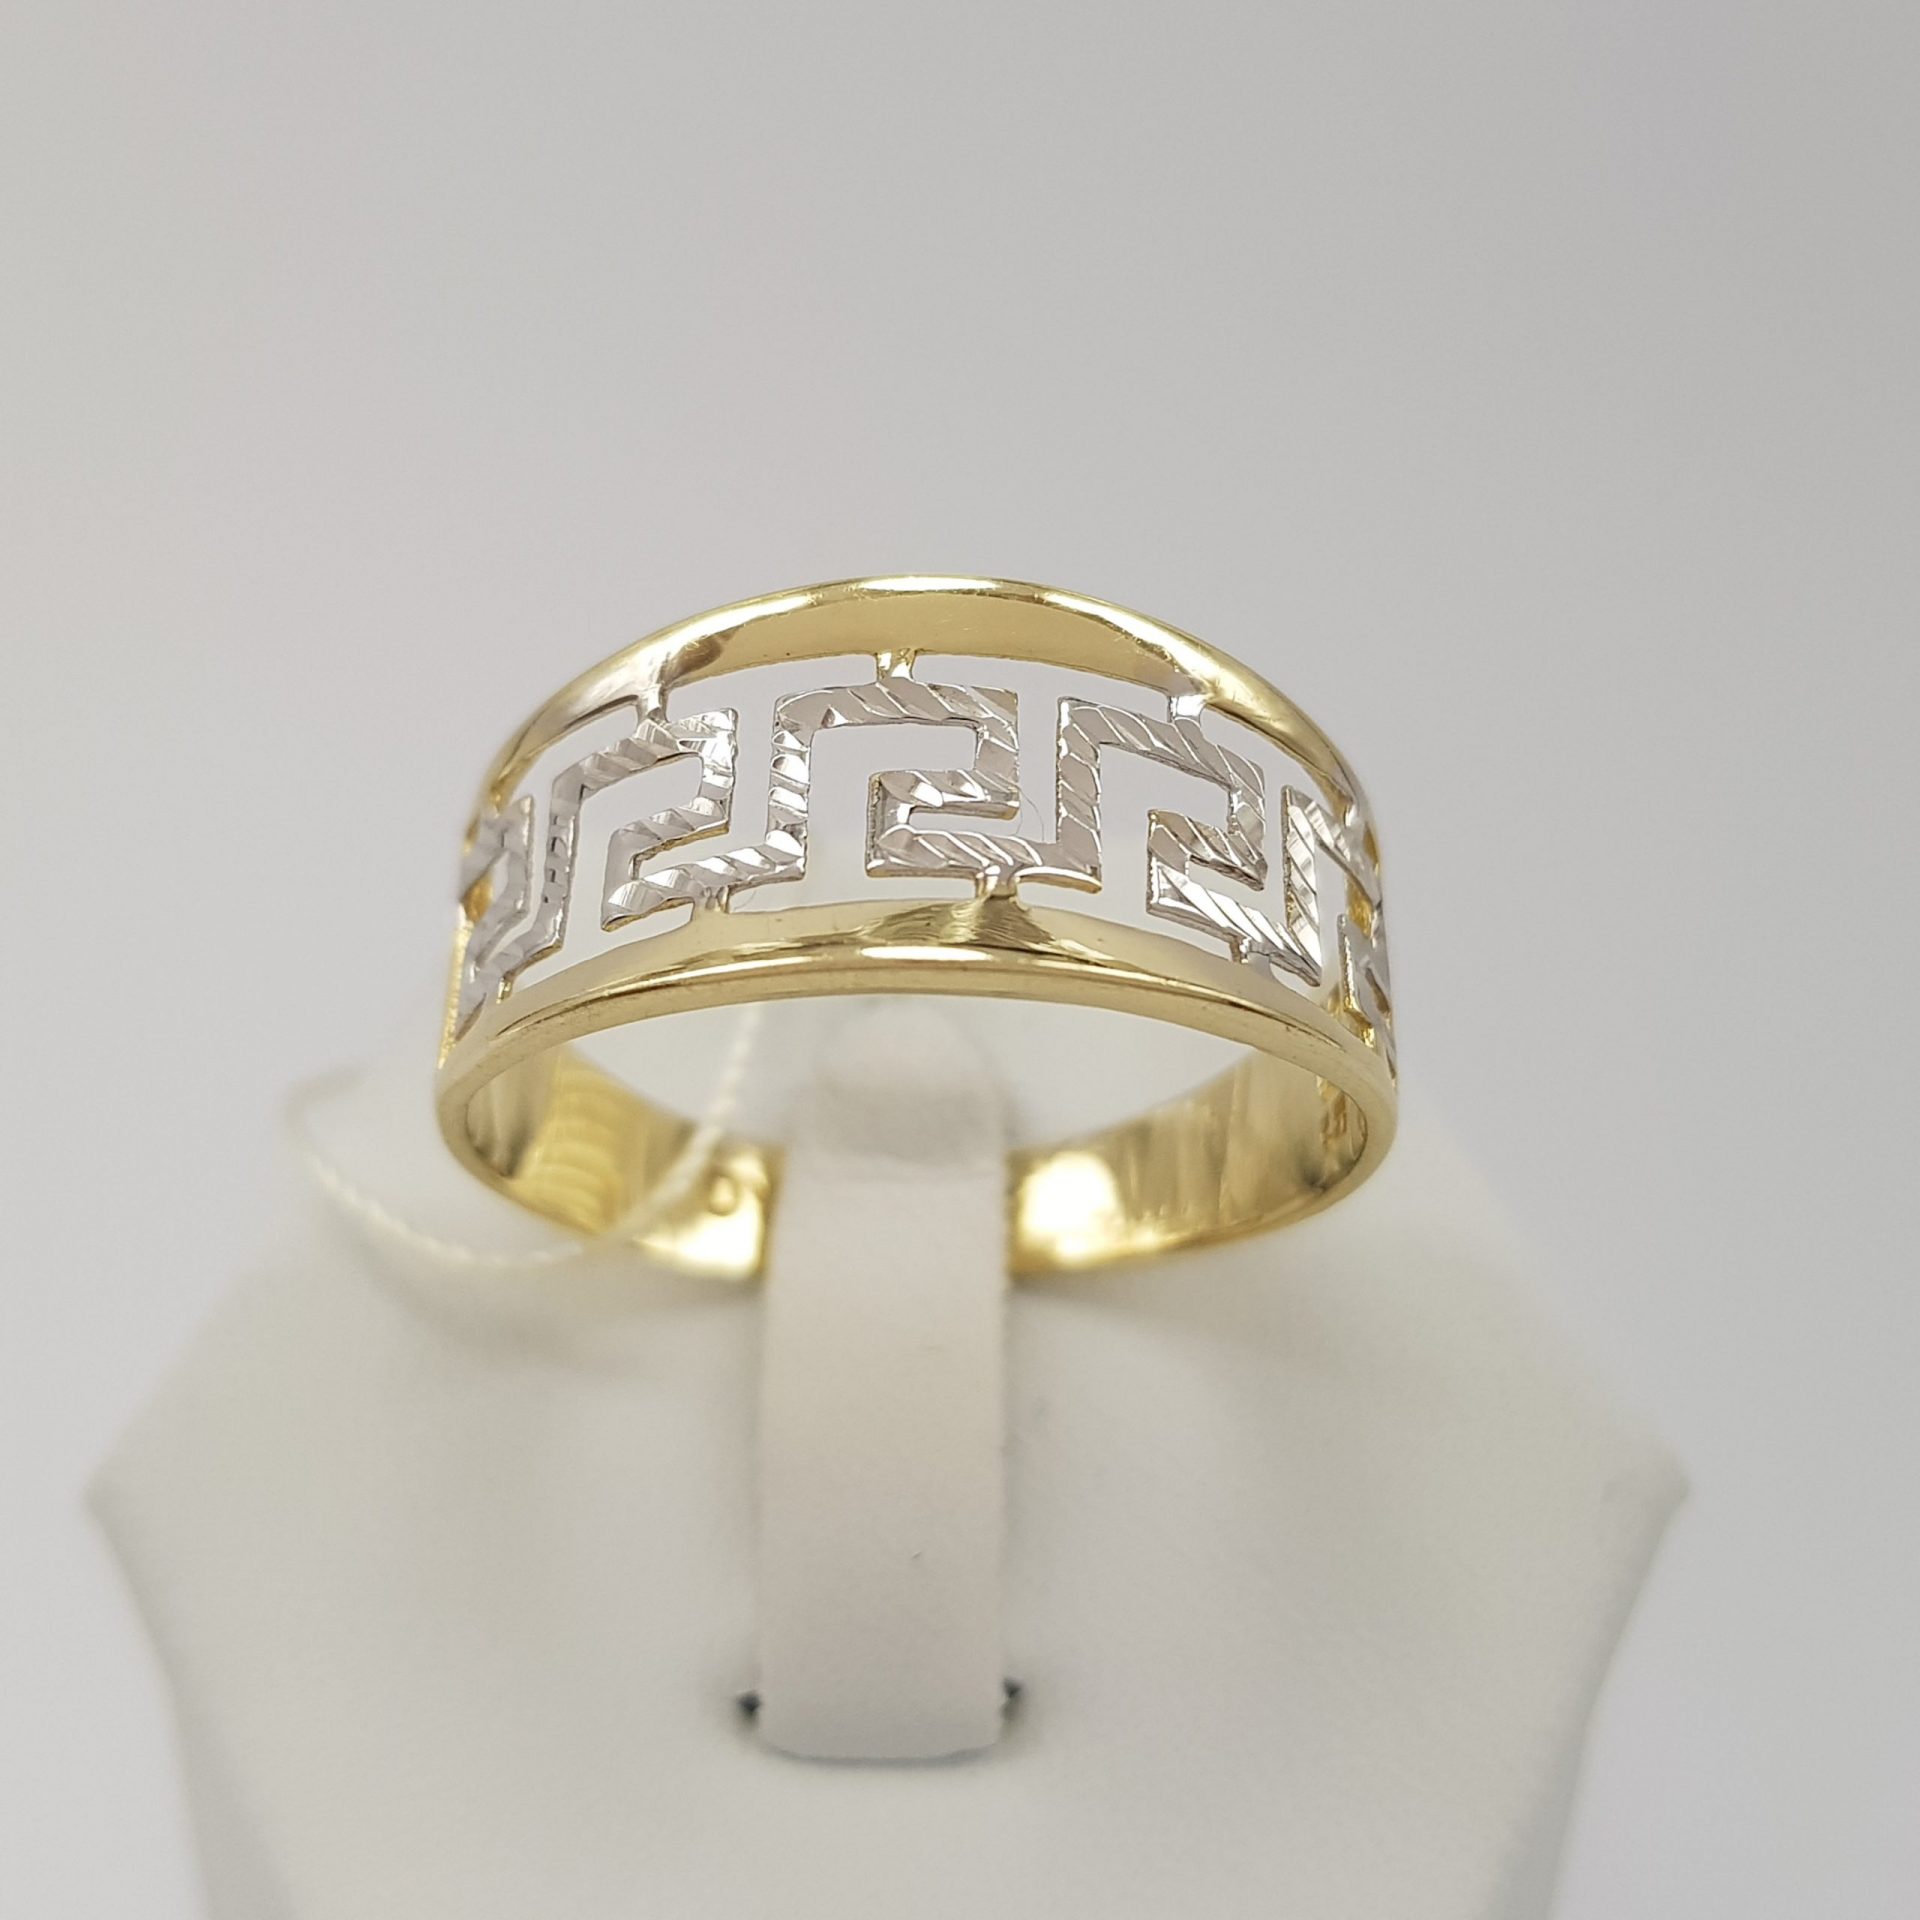 W złocie dwukolorowym - modny pierścionek złoty